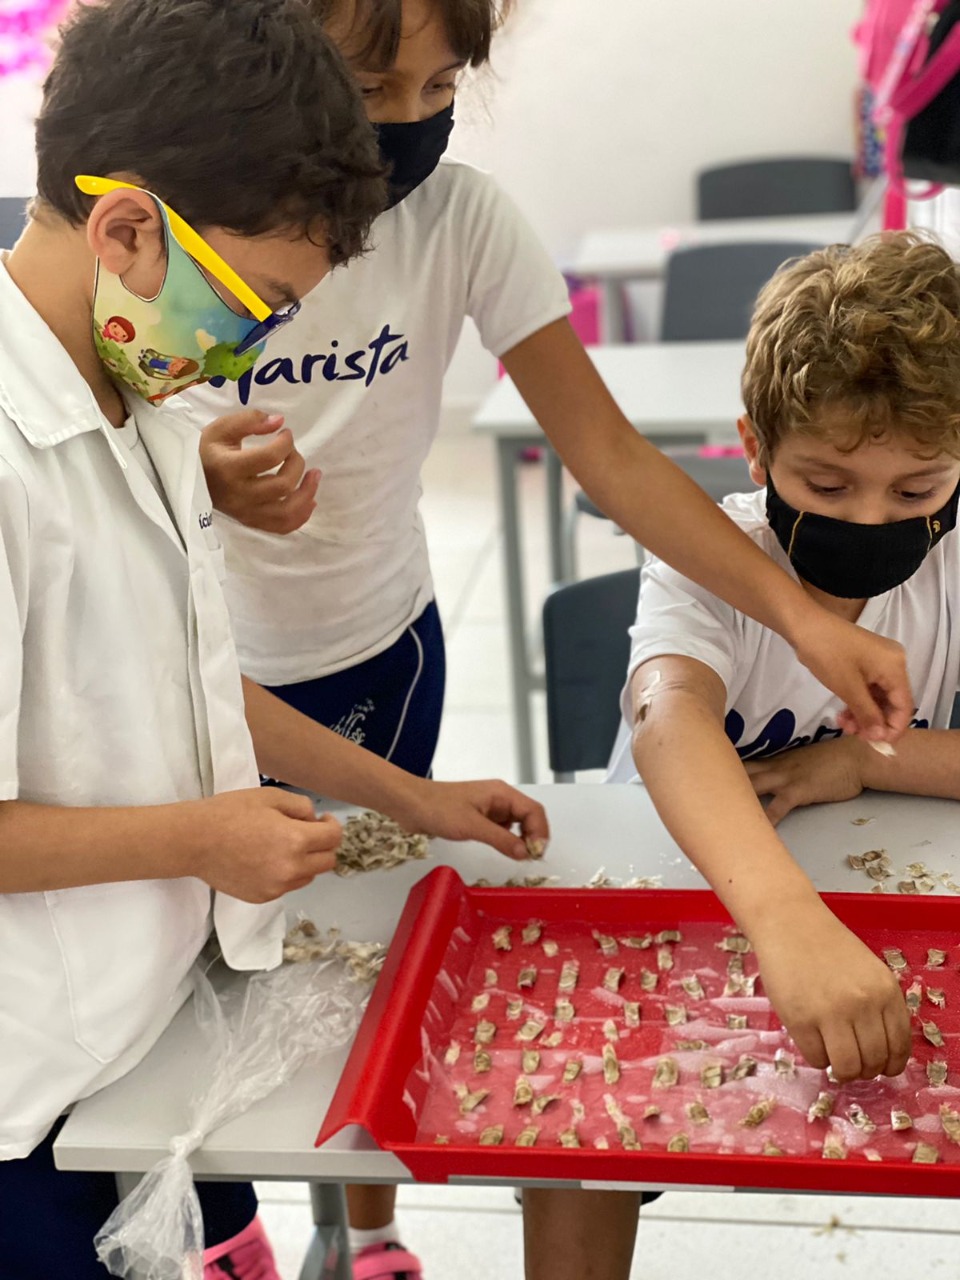  estudantes captaram sementes de ipês roxos do colégio, que serão distribuídas para a comunidade.